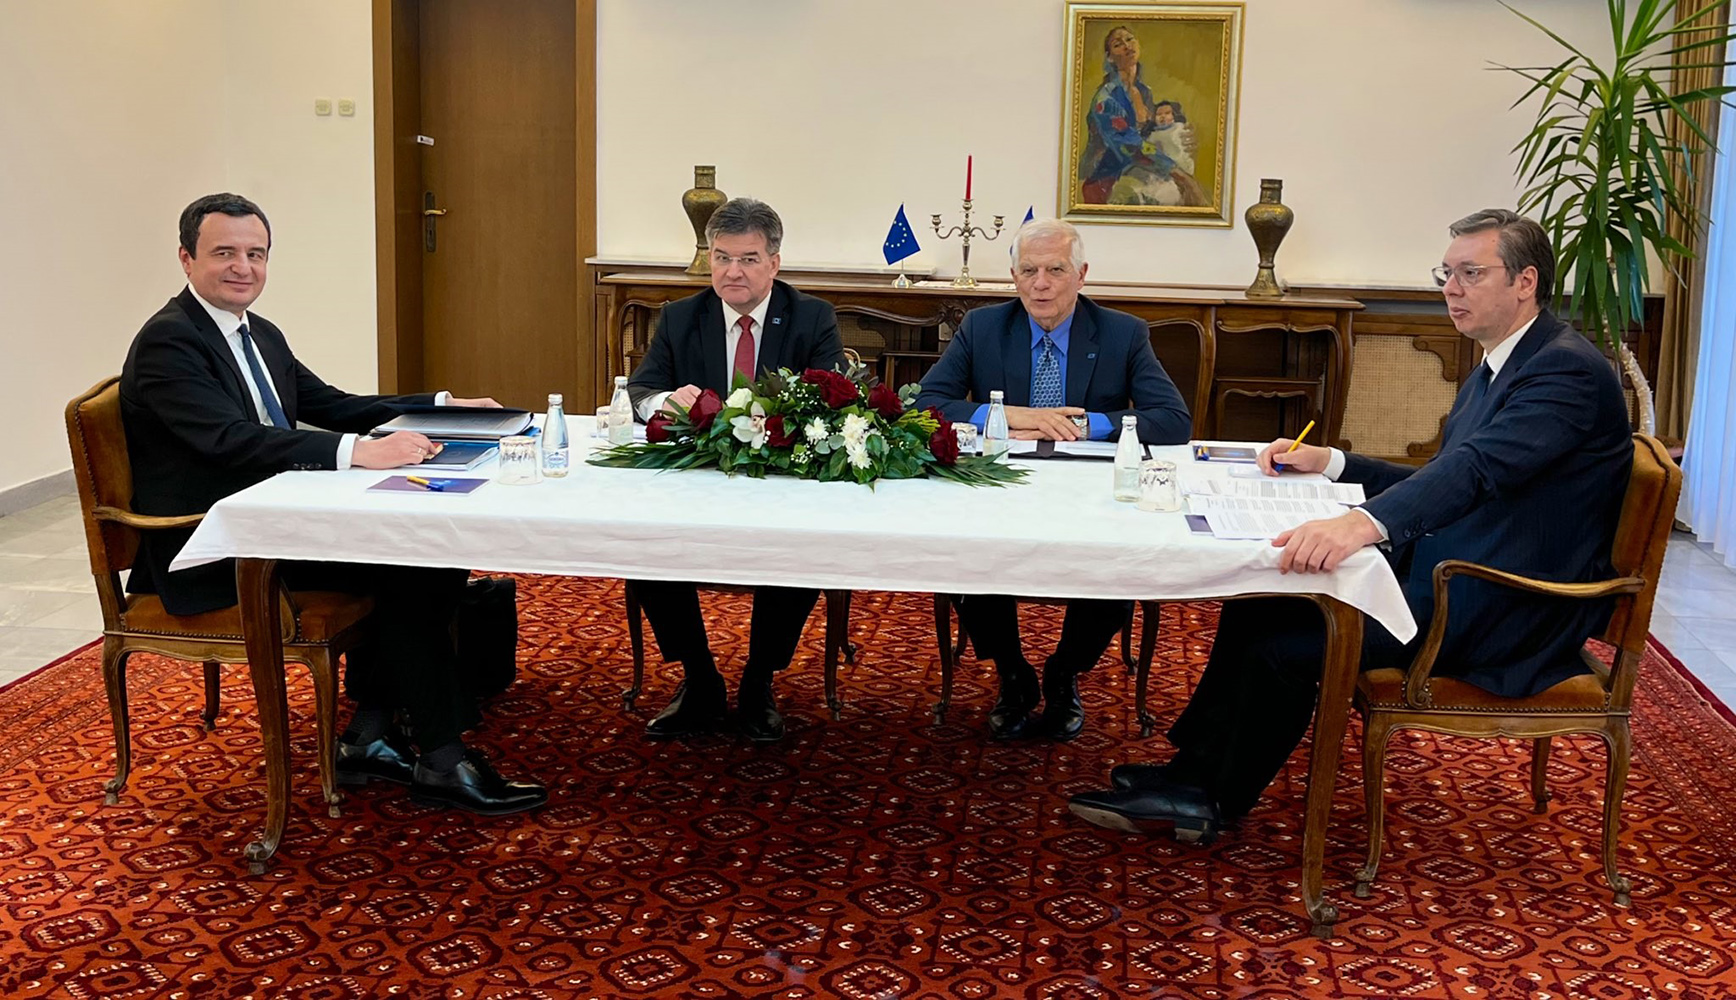 الاتحاد الاوروبي يعلن اتفاق قادة صربيا وكوسوفو على تنفيذ صفقة لتطبيع علاقاتهما